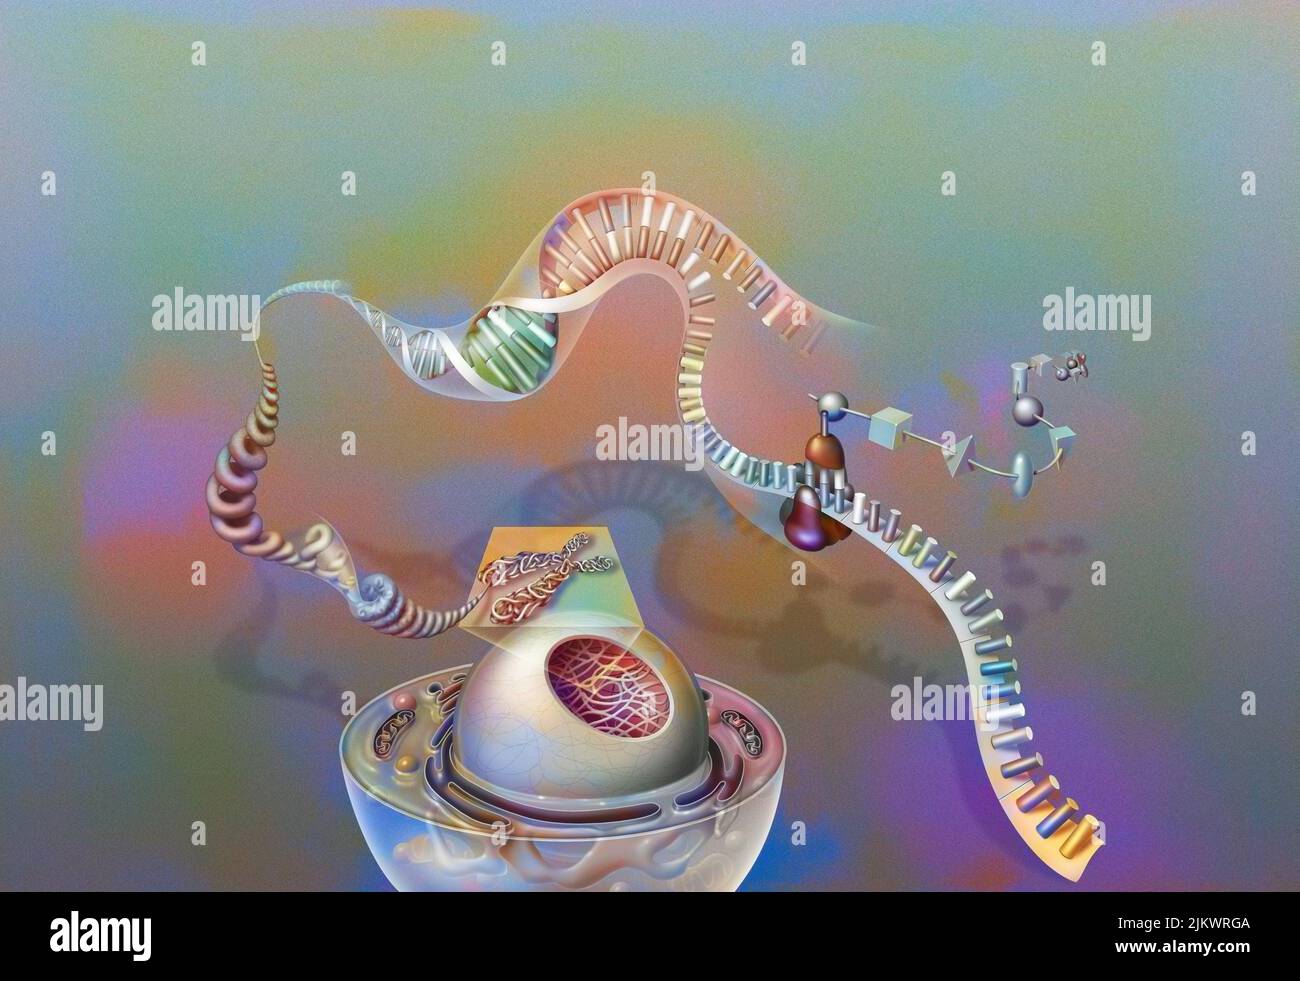 Genes: Núcleo de una célula con cromosoma, cromatina, hélice de ADN, genes, ribosoma, proteínas. Foto de stock